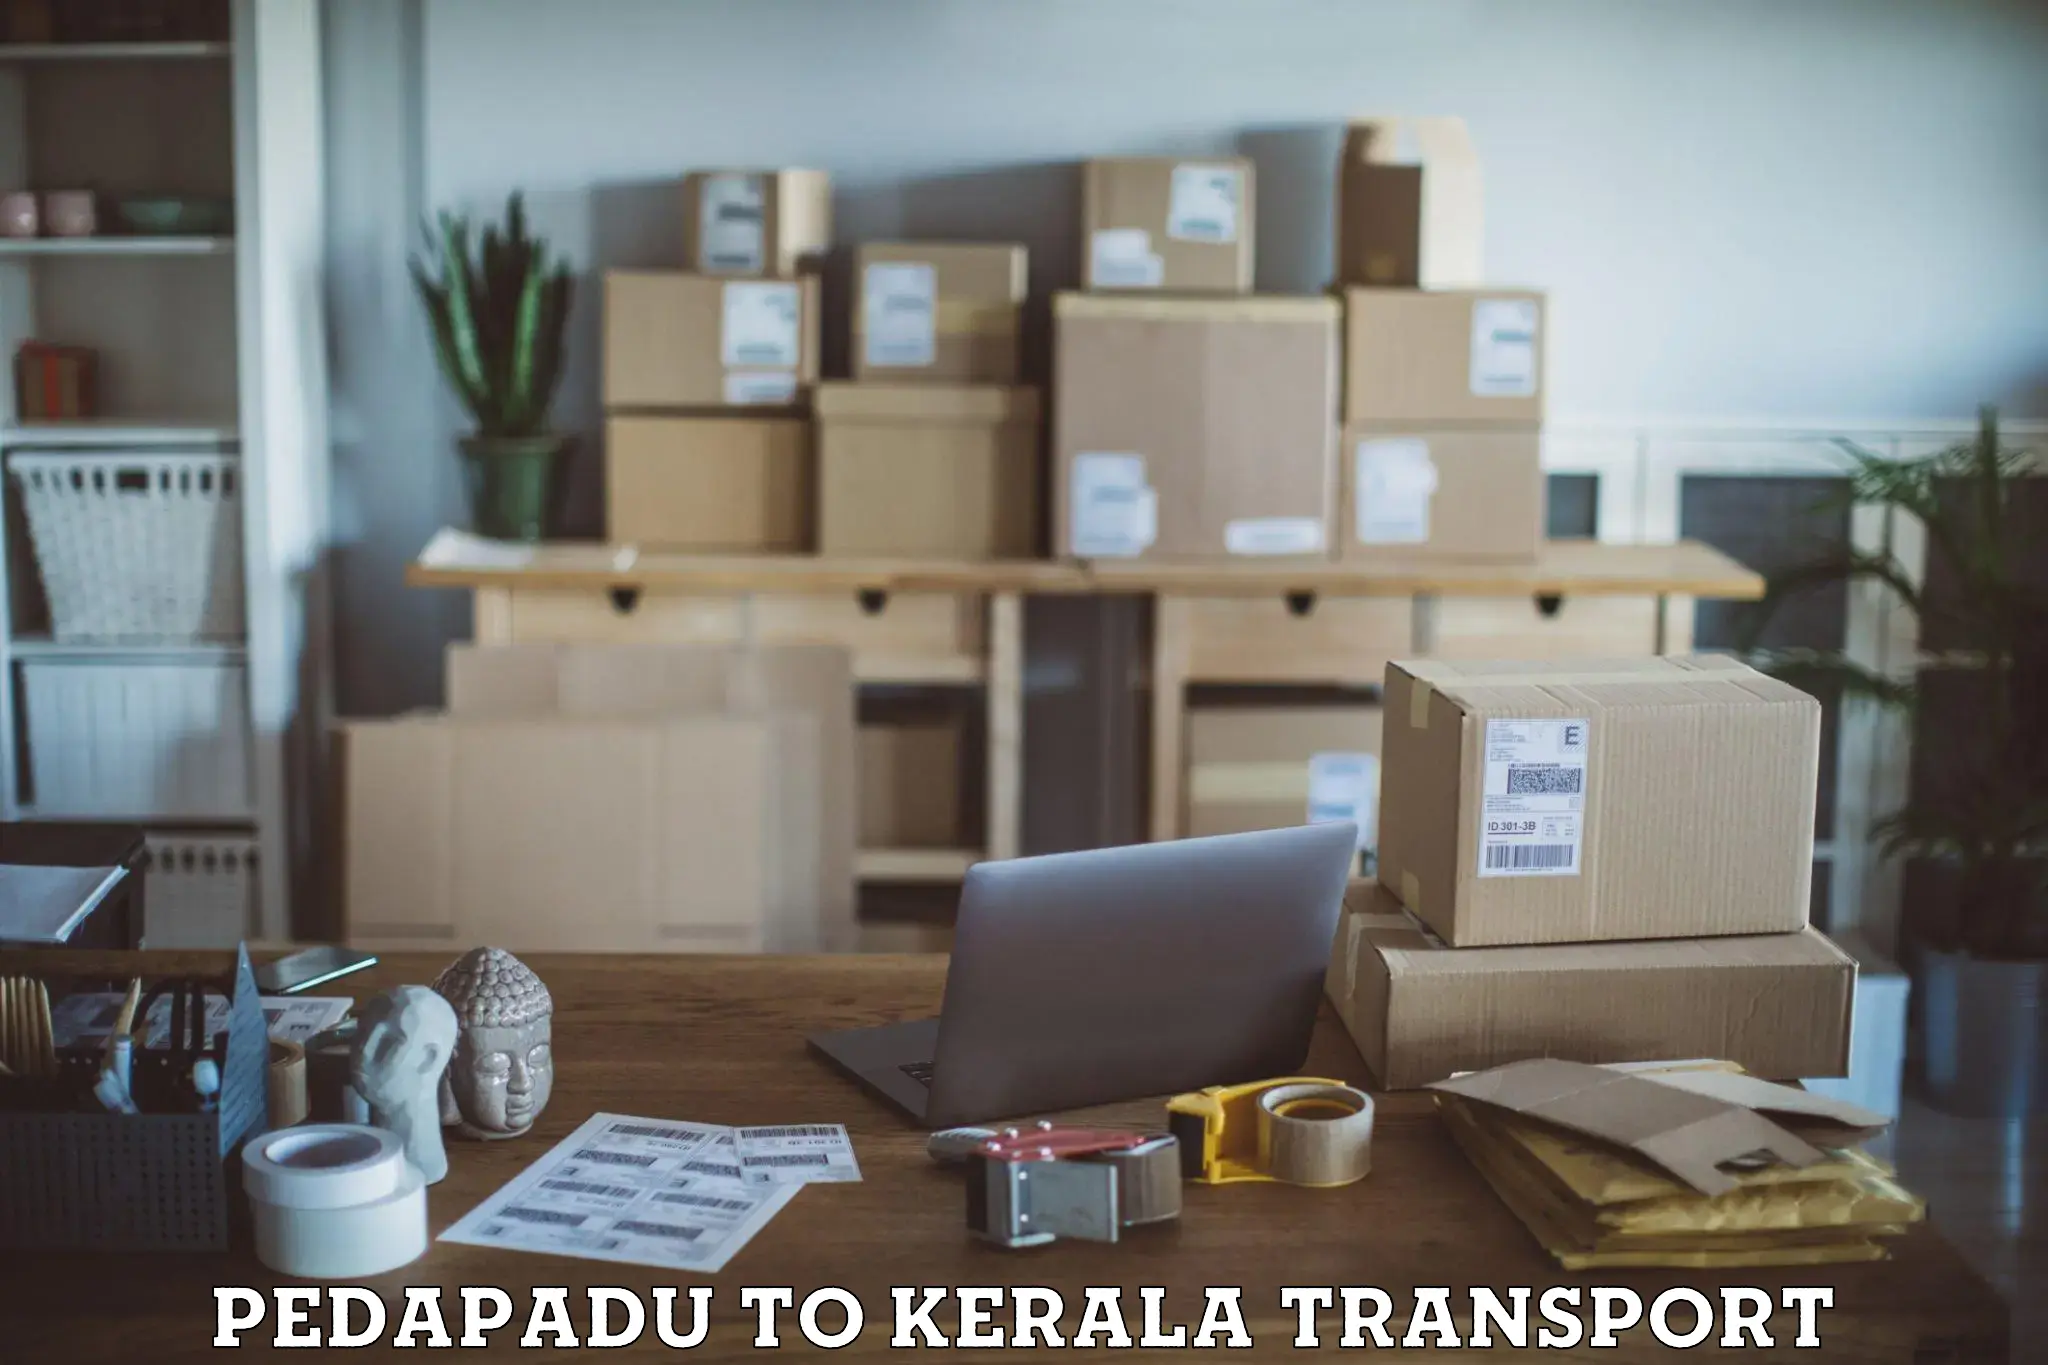 Transport services Pedapadu to Kalluvathukkal